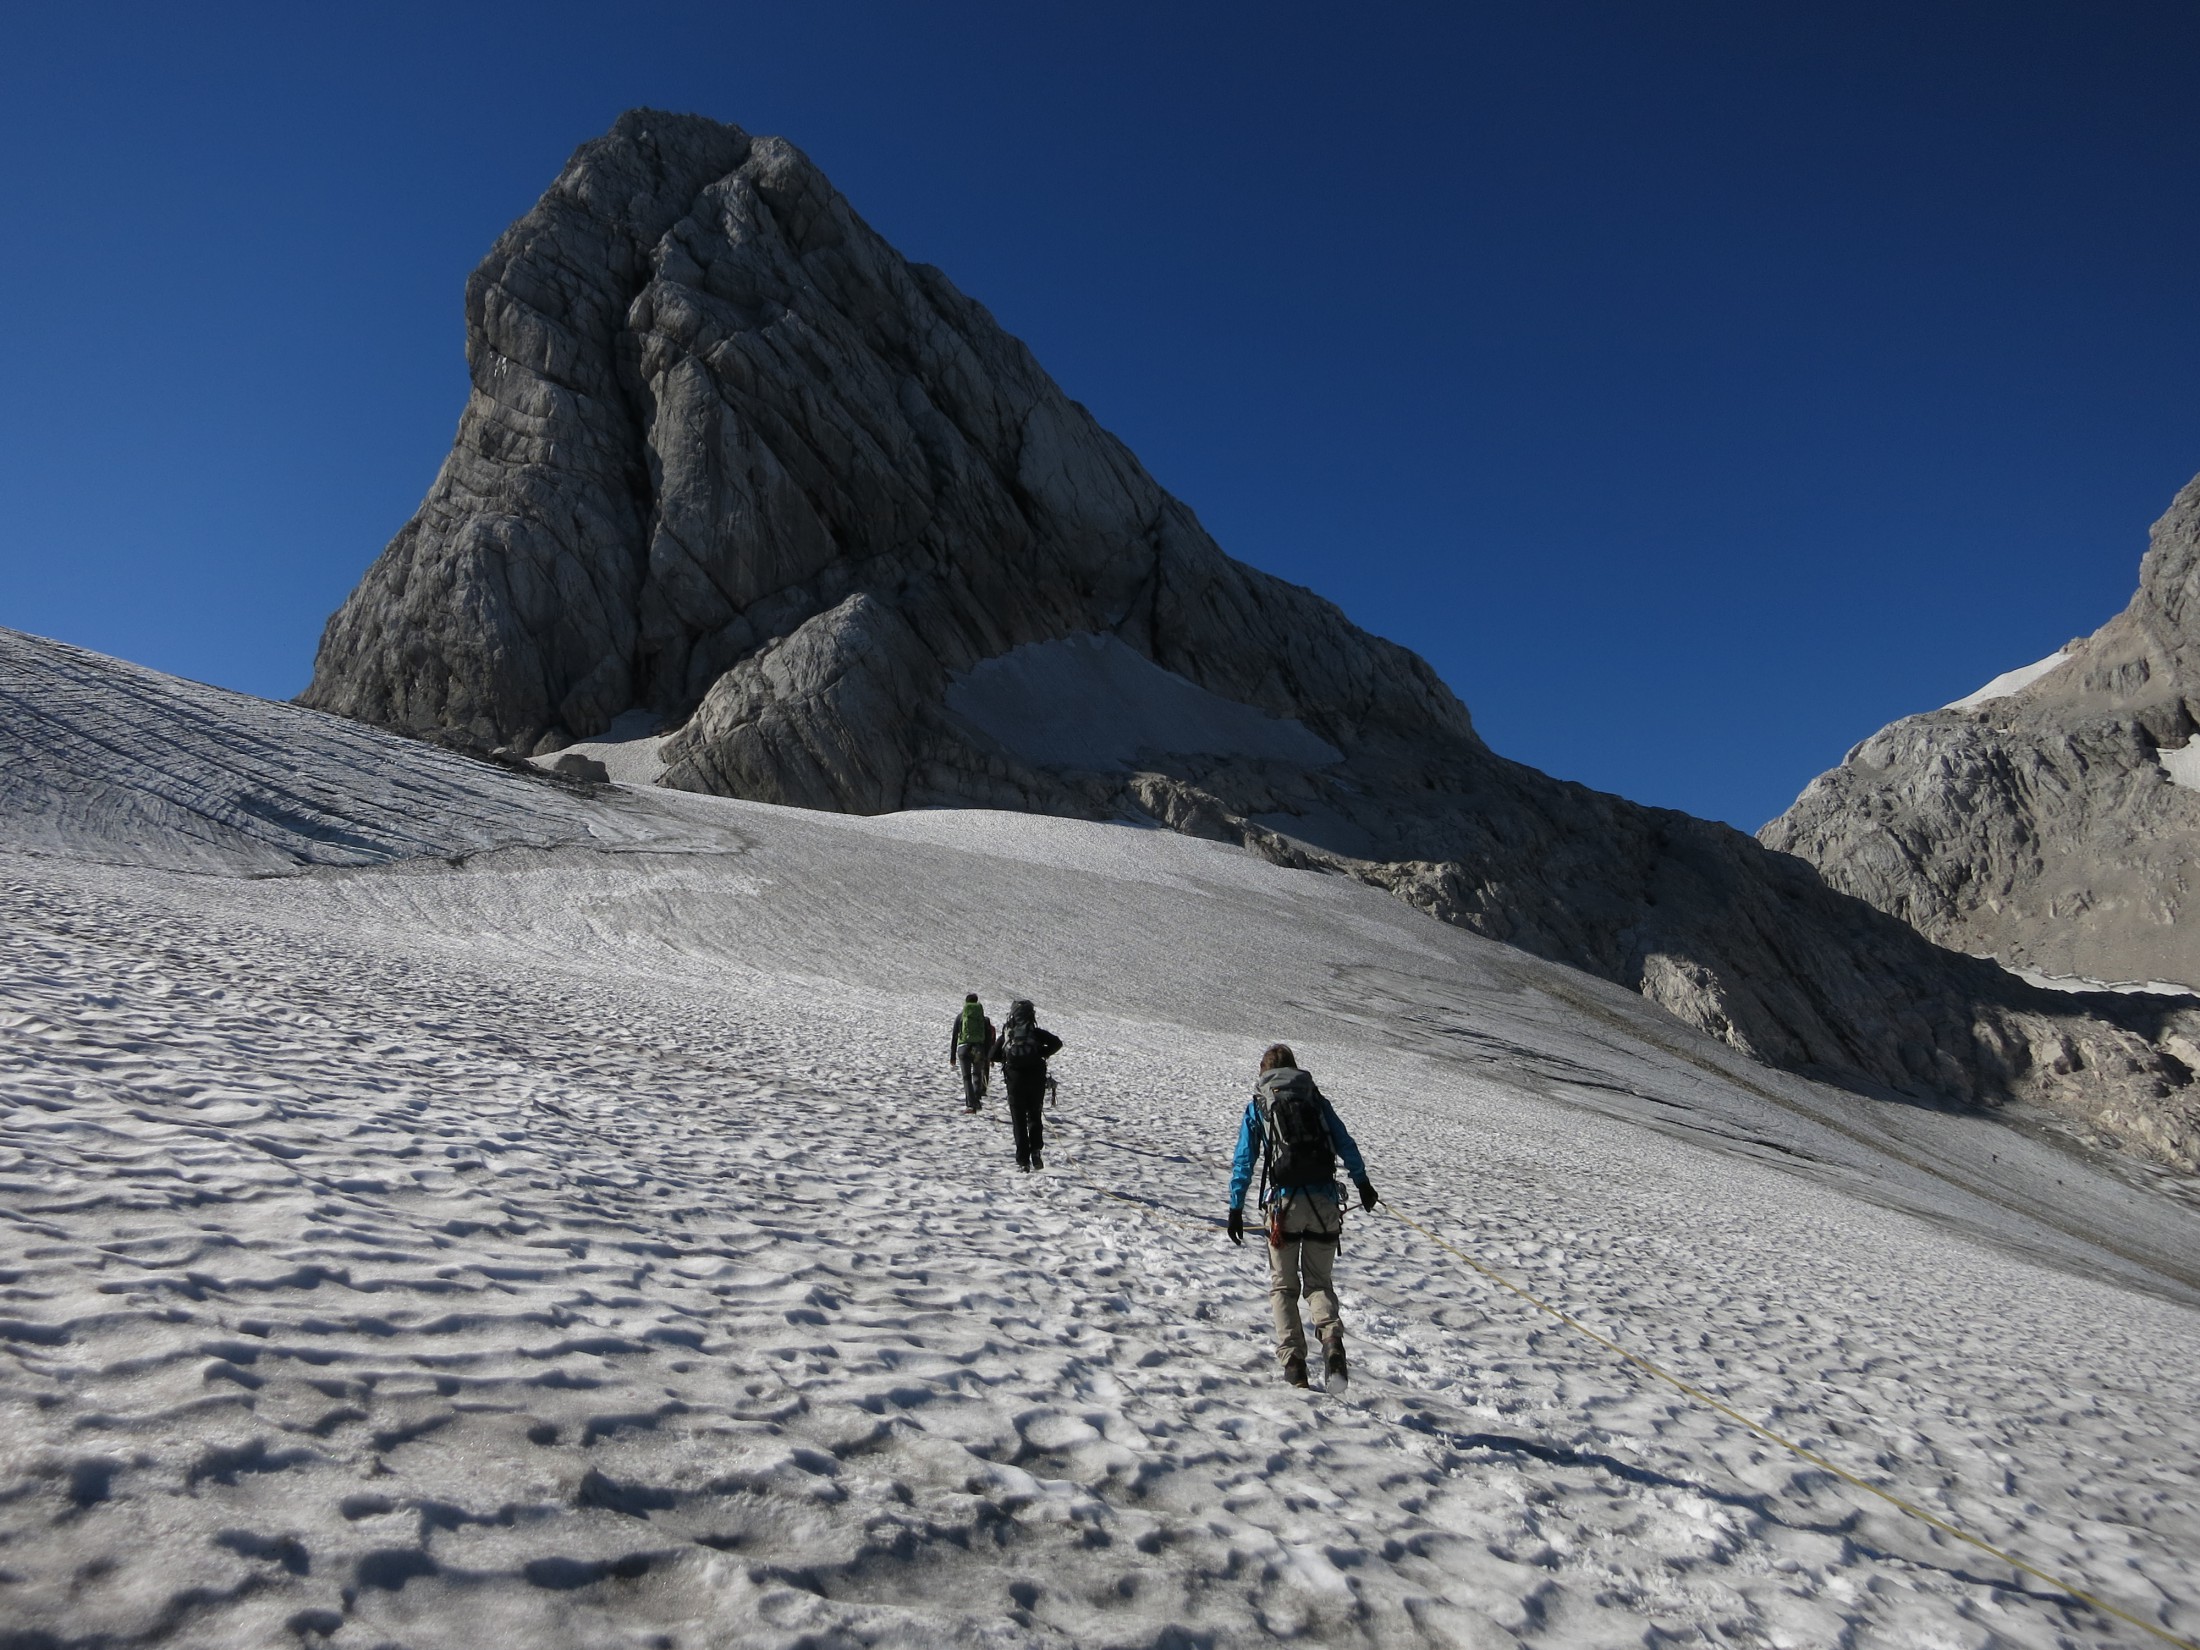 Alpine Ausbildung in Fels/Eis 